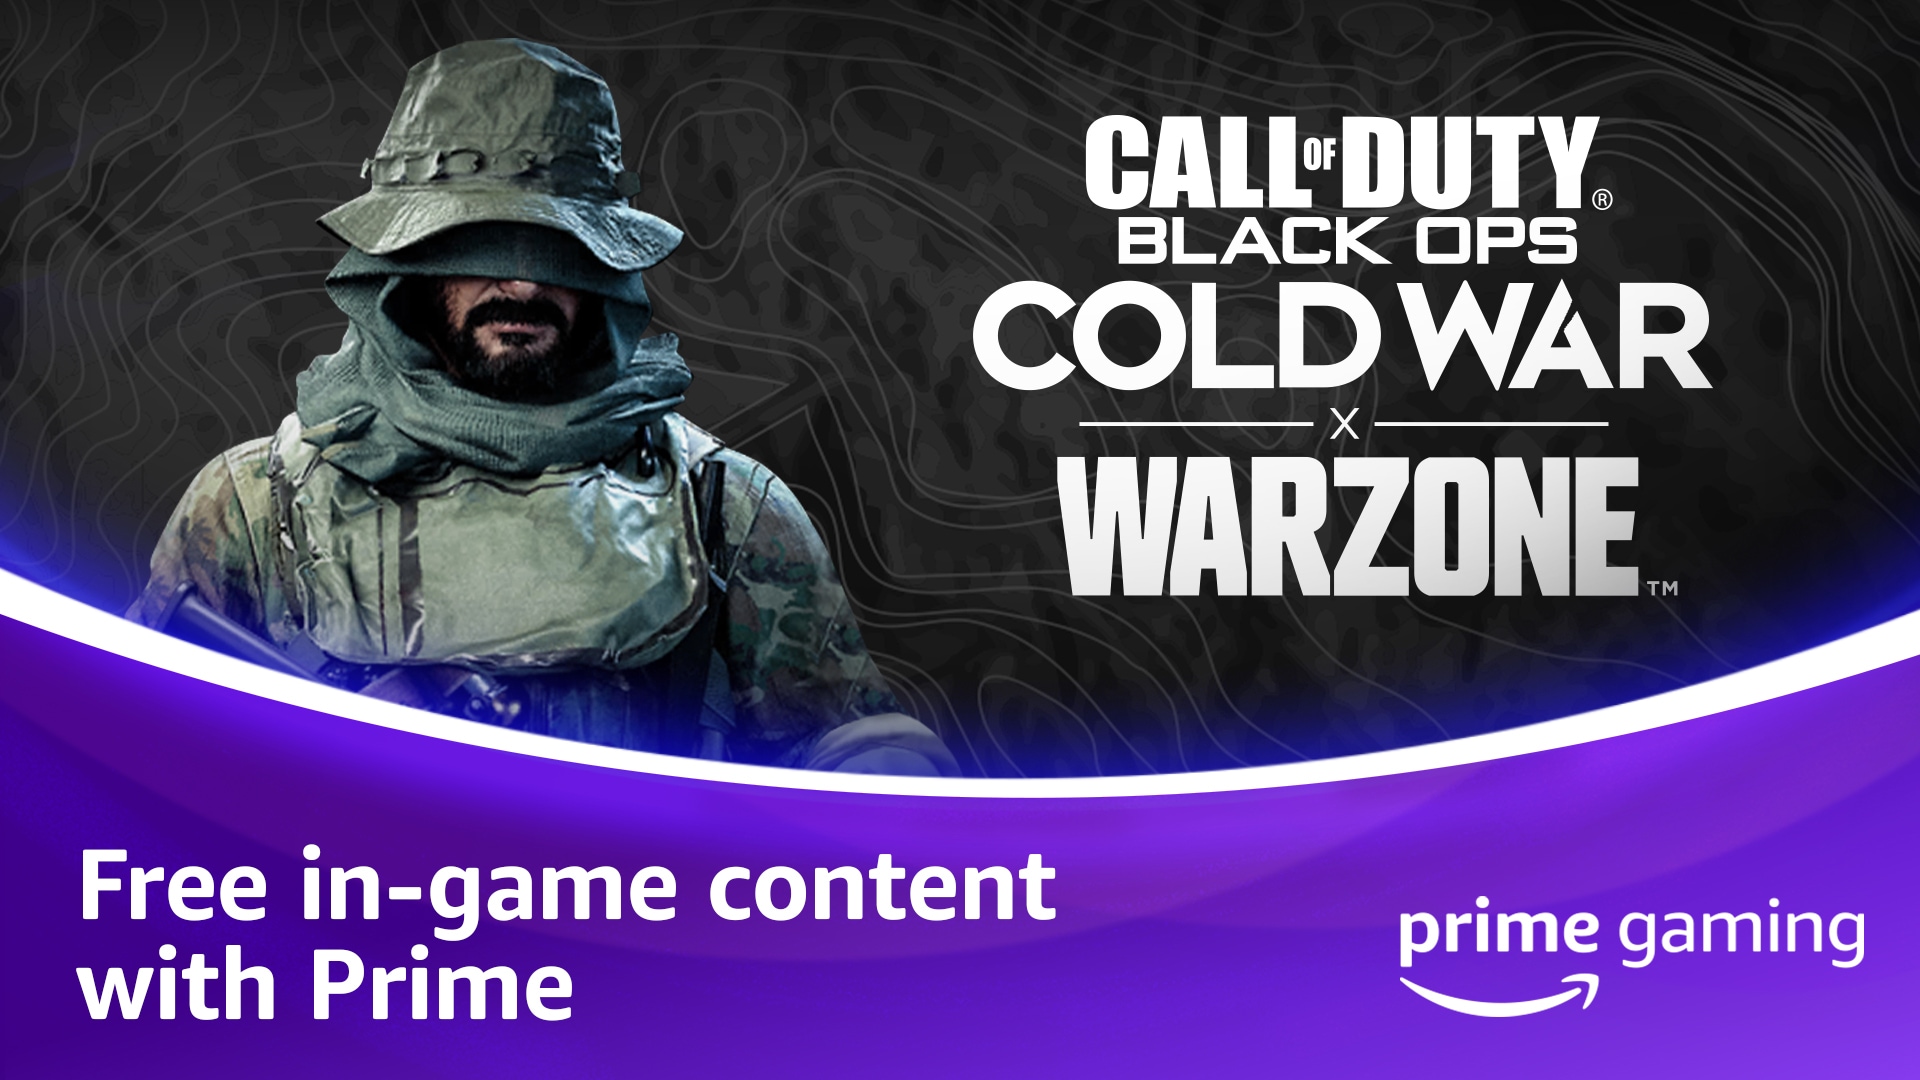 Apresentando as recompensas do Prime Gaming de Call of Duty®: Black Ops Cold War, Warzone™ e Mobile para membros Prime